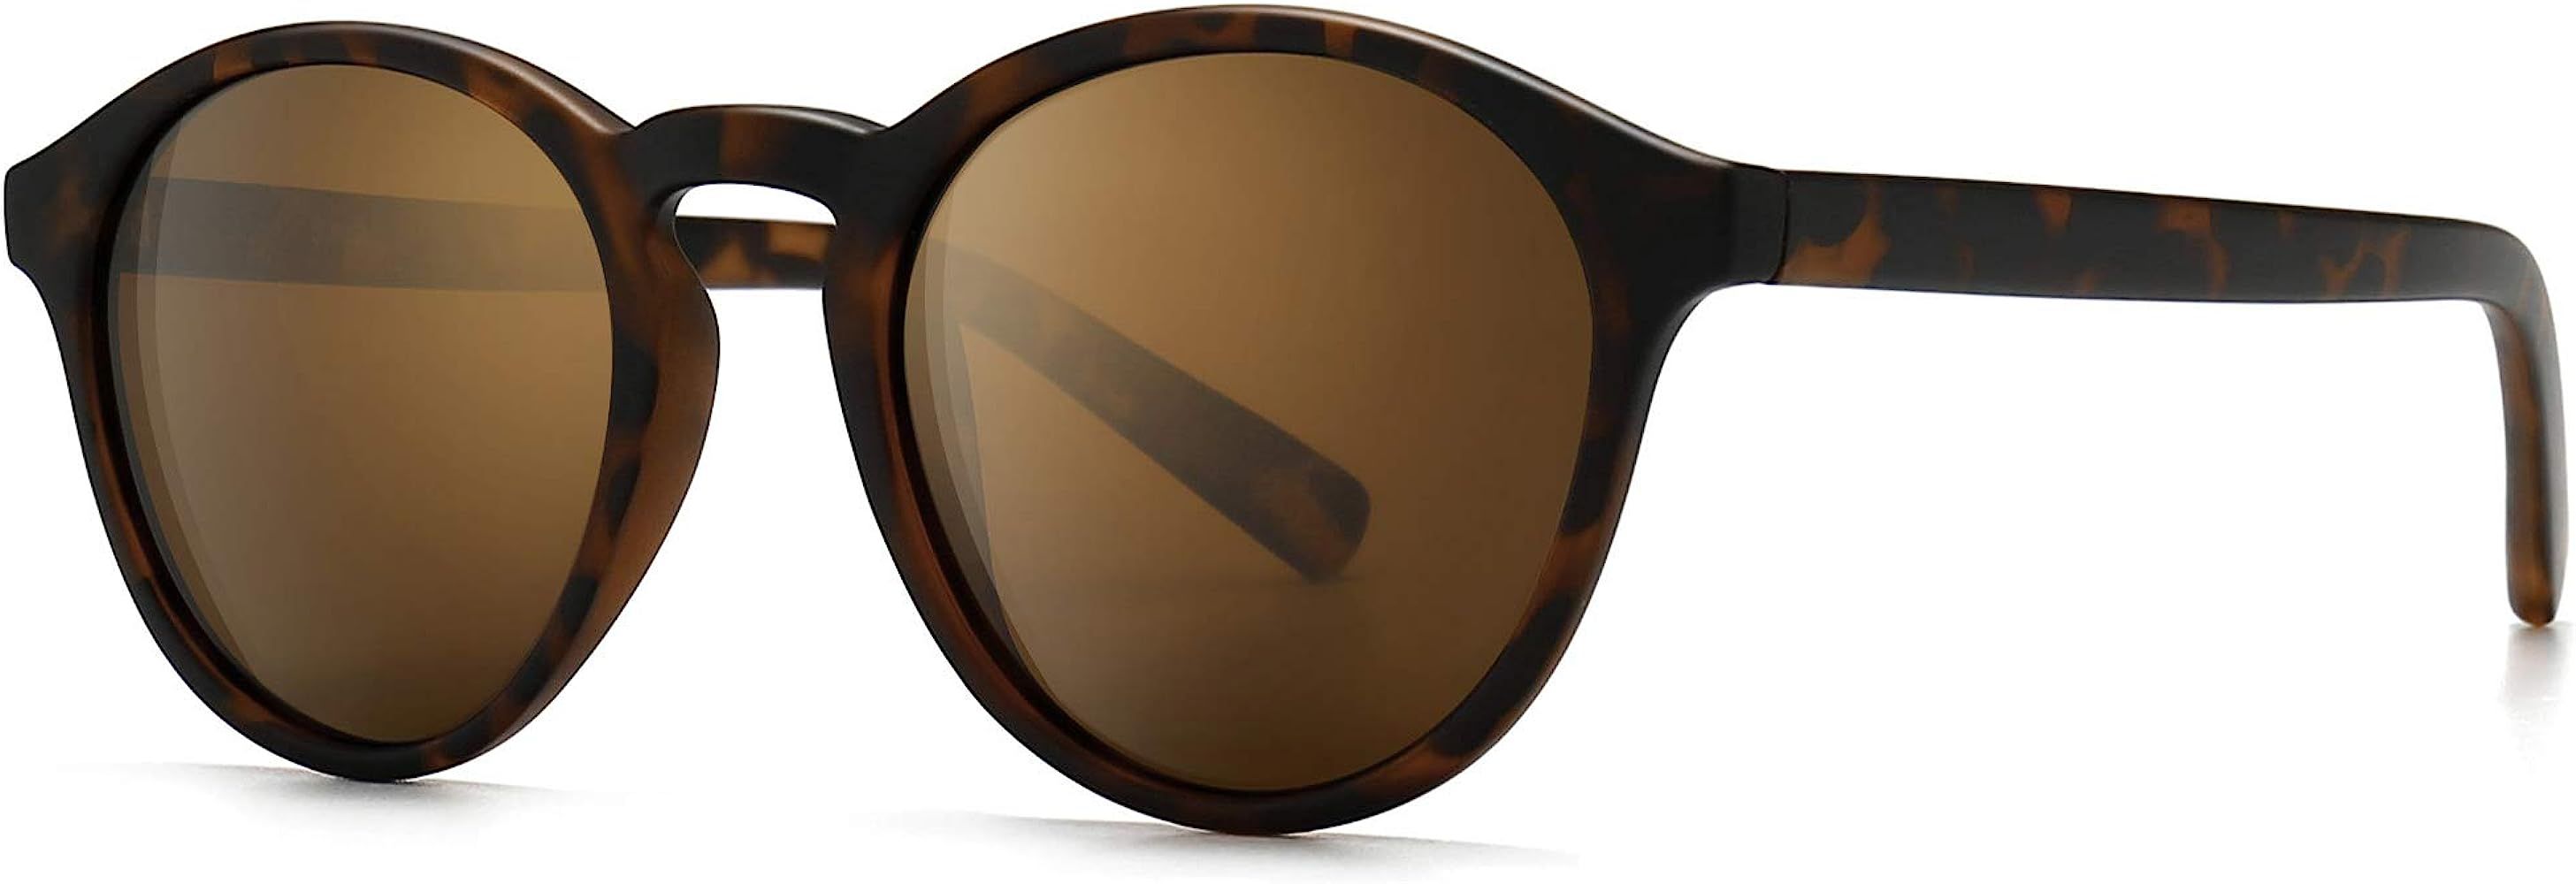 Classic Round Polarized Sunglasses Retro Vintage Style UV400 | Amazon (US)